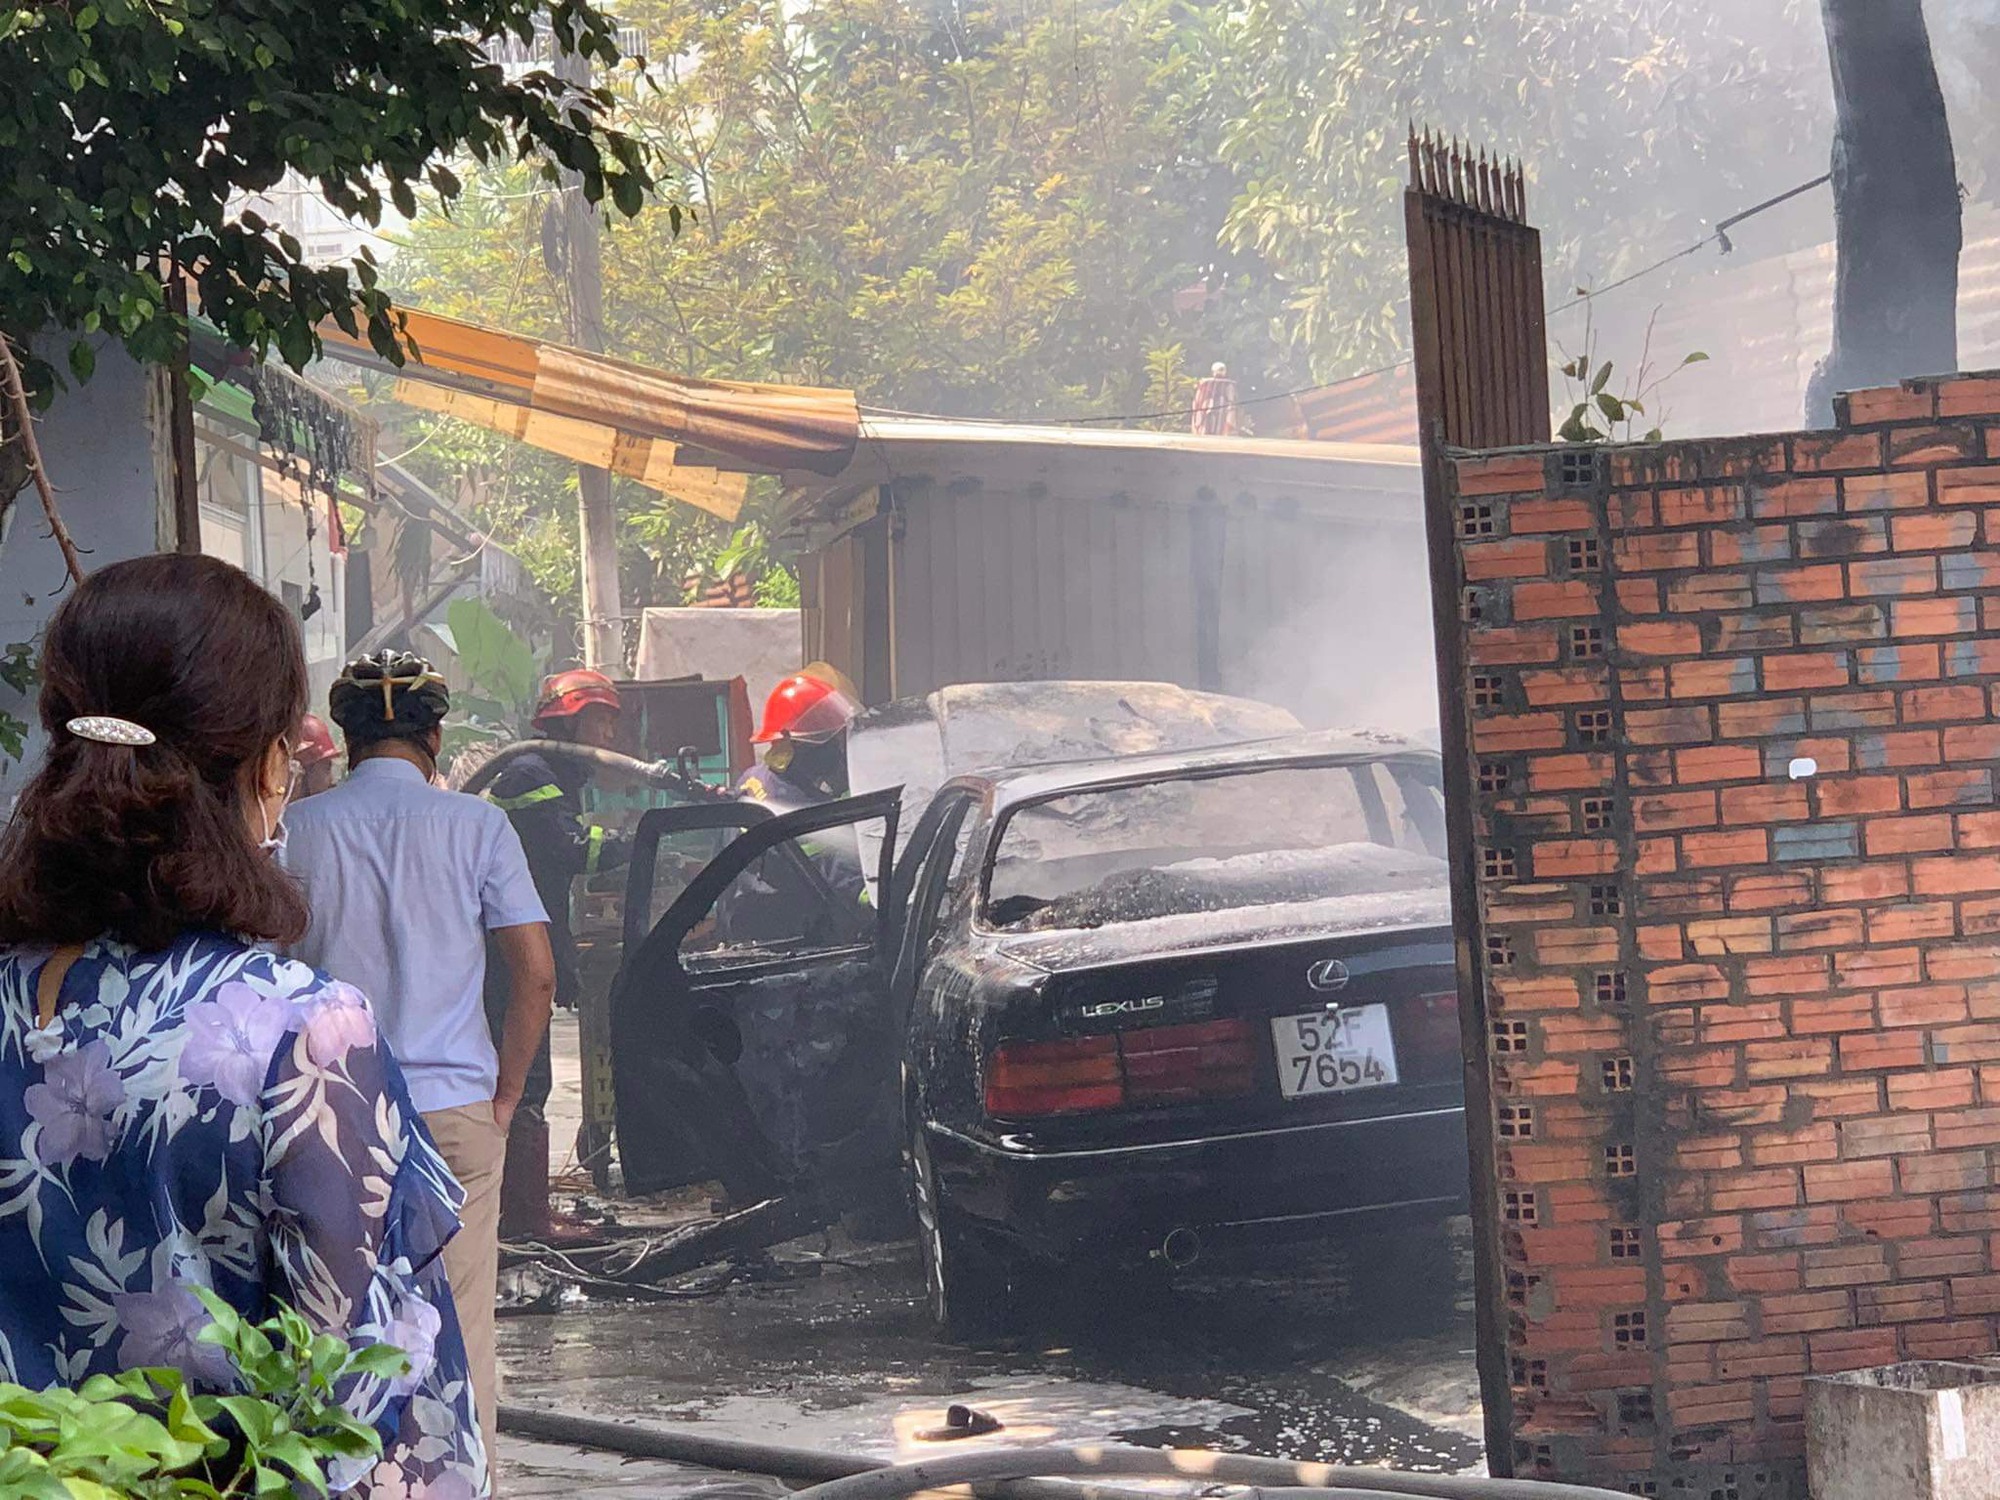 Ô tô Lexus bốc cháy dữ dội khi đang đậu trong khuôn viên nhà dân ở TP.HCM - Ảnh 1.